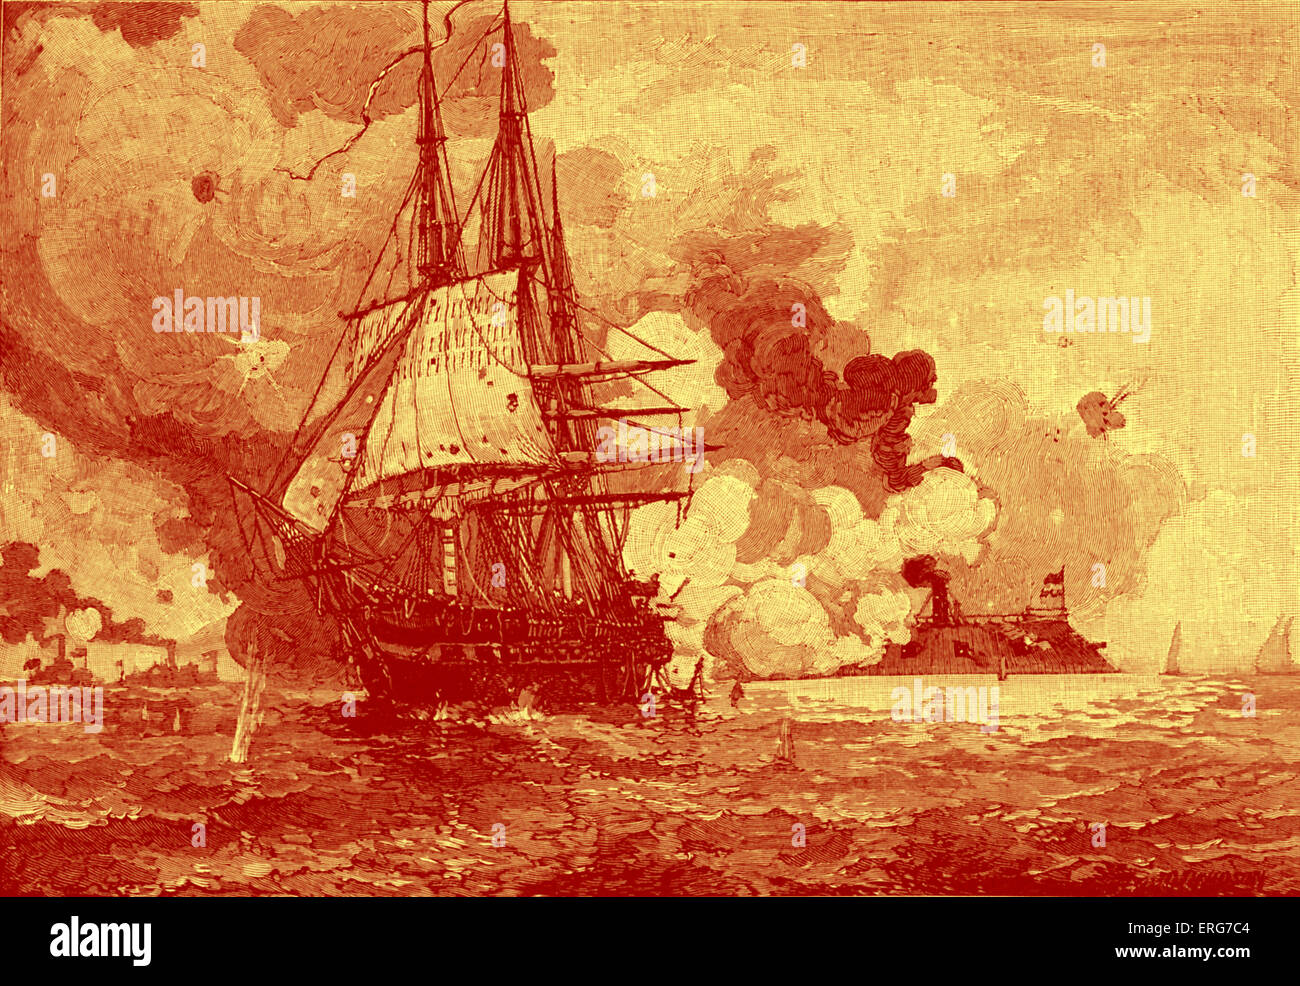 CSS Virginia fahren USS Congress aus ihrer Verankerung während der Schlacht von Hampton Roads am 8. März 1862. Amerikanischer Bürgerkrieg. Stockfoto